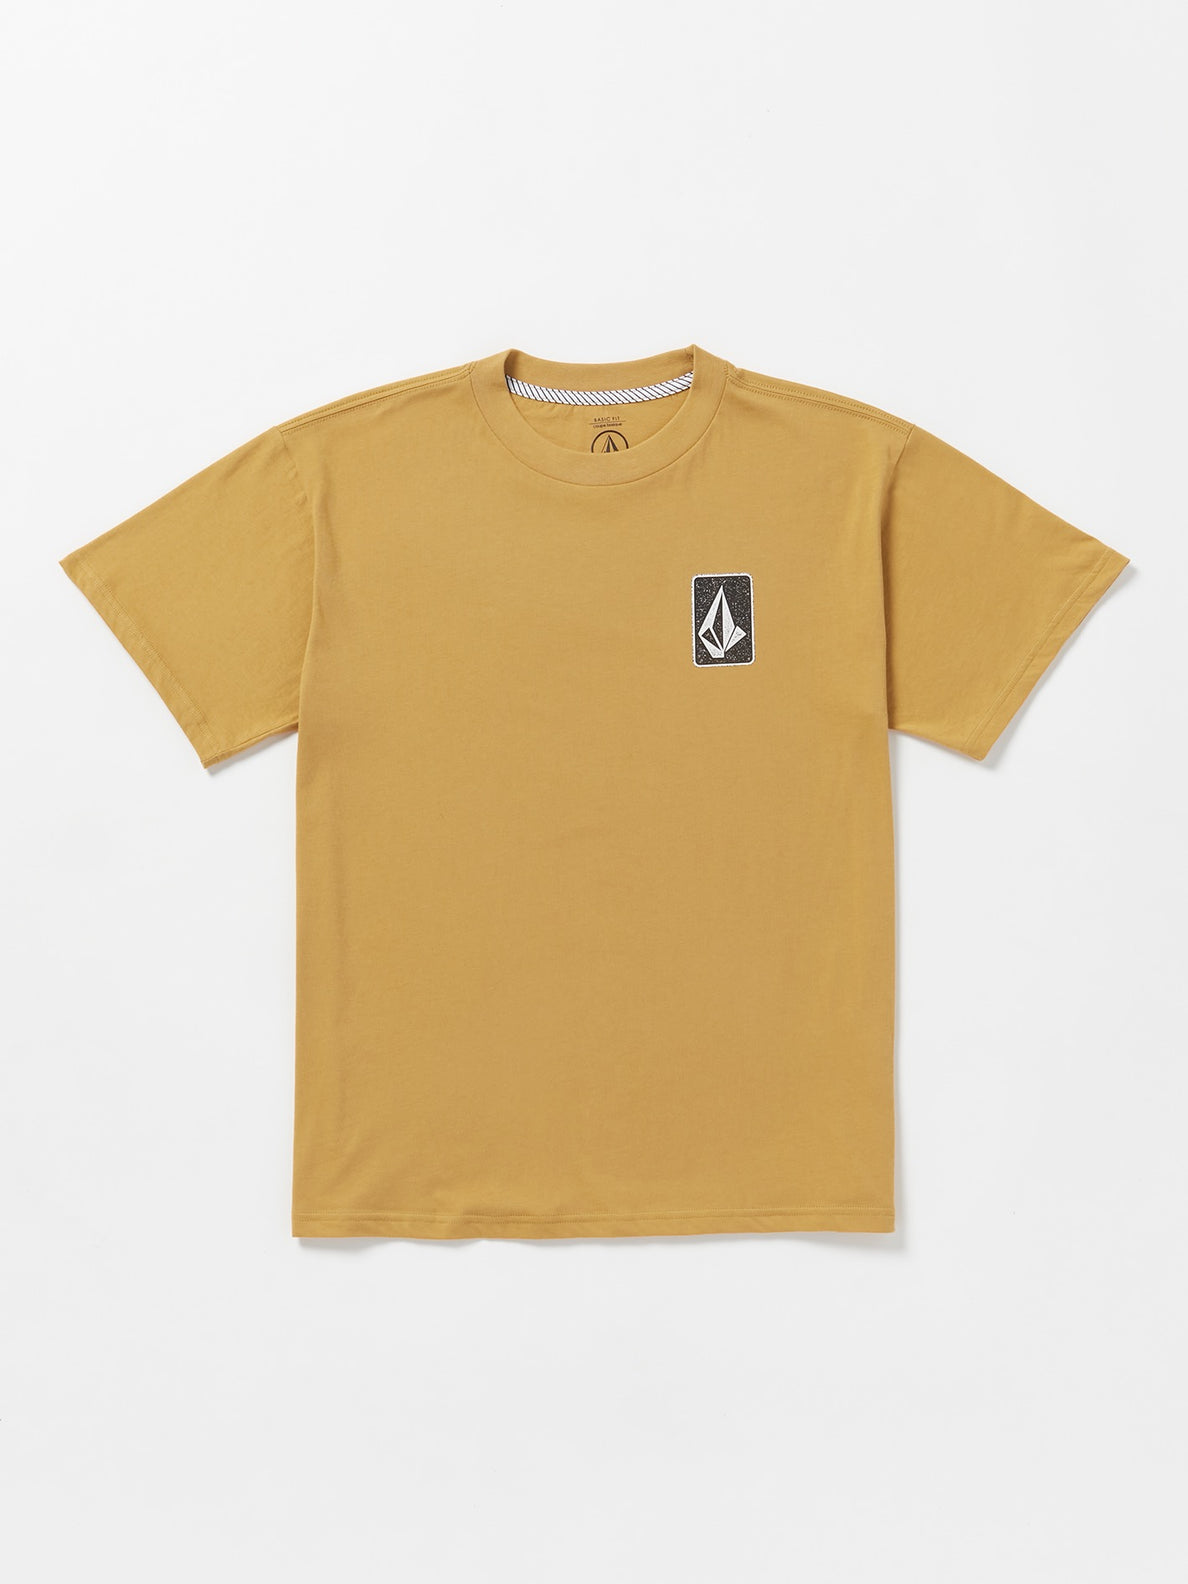 Skate Vitals Originator Short Sleeve T-Shirt - Mustard